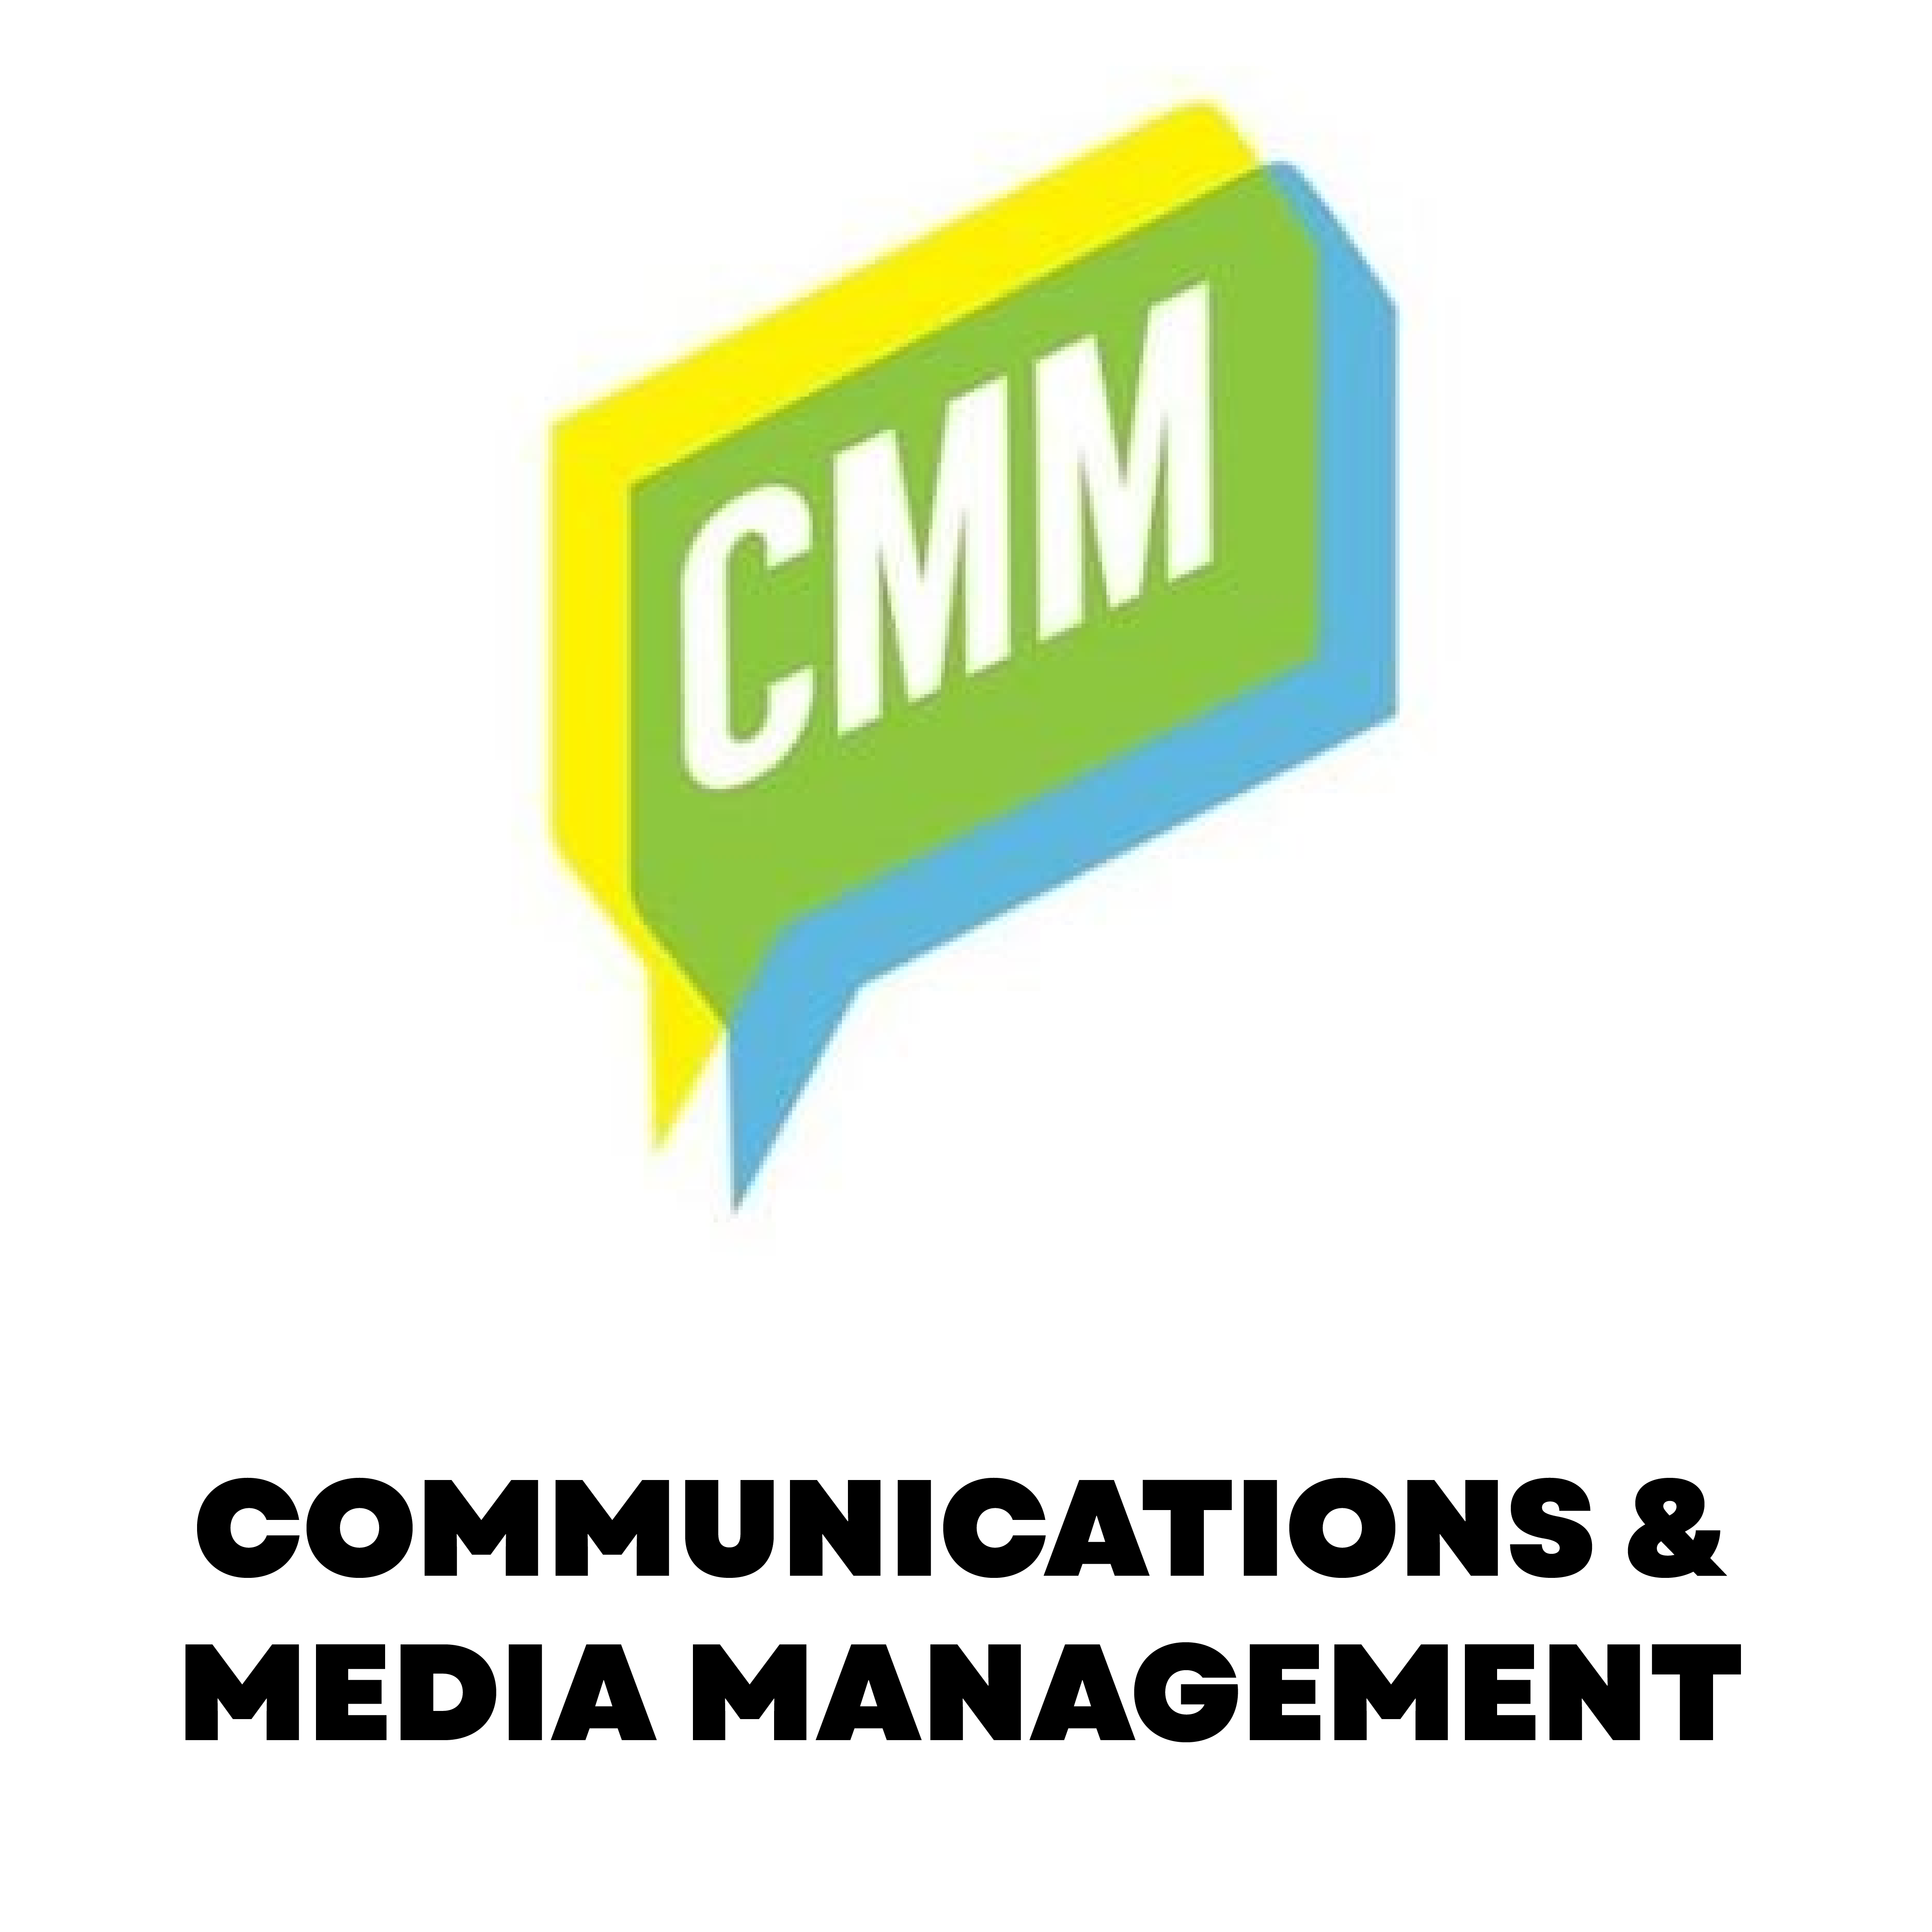 Communication & Media Management